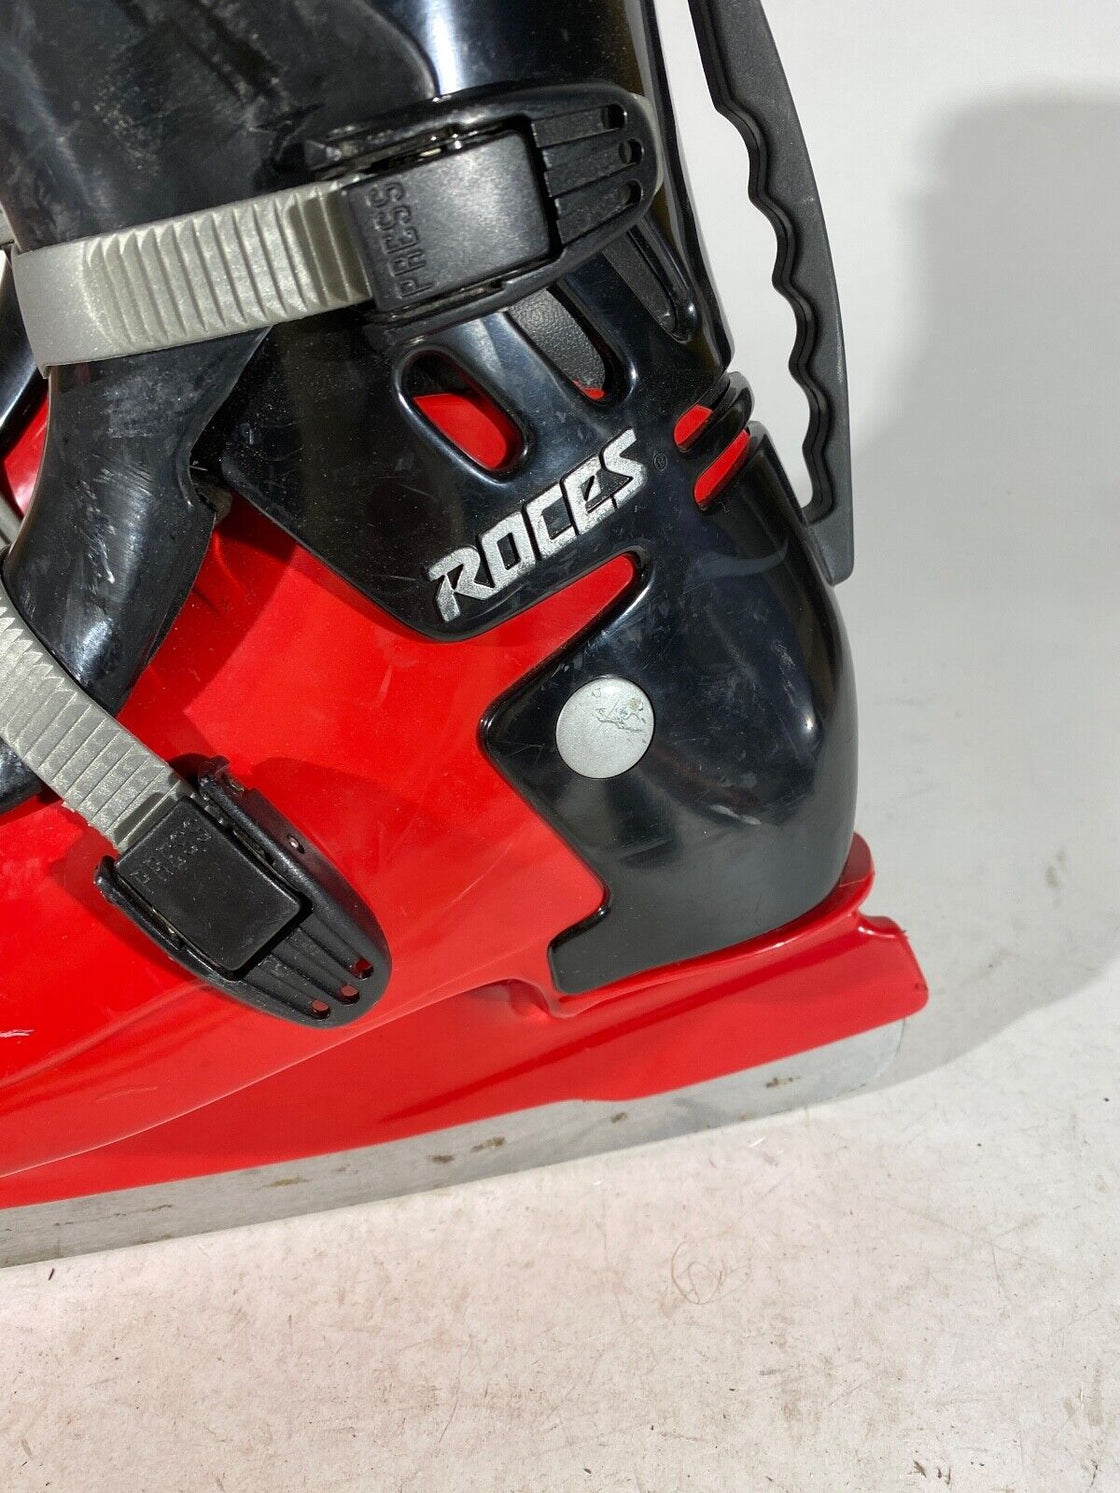 ROCES Ice Skates Recreational Winter Sports Unisex Size EU45, US10, Mondo 280